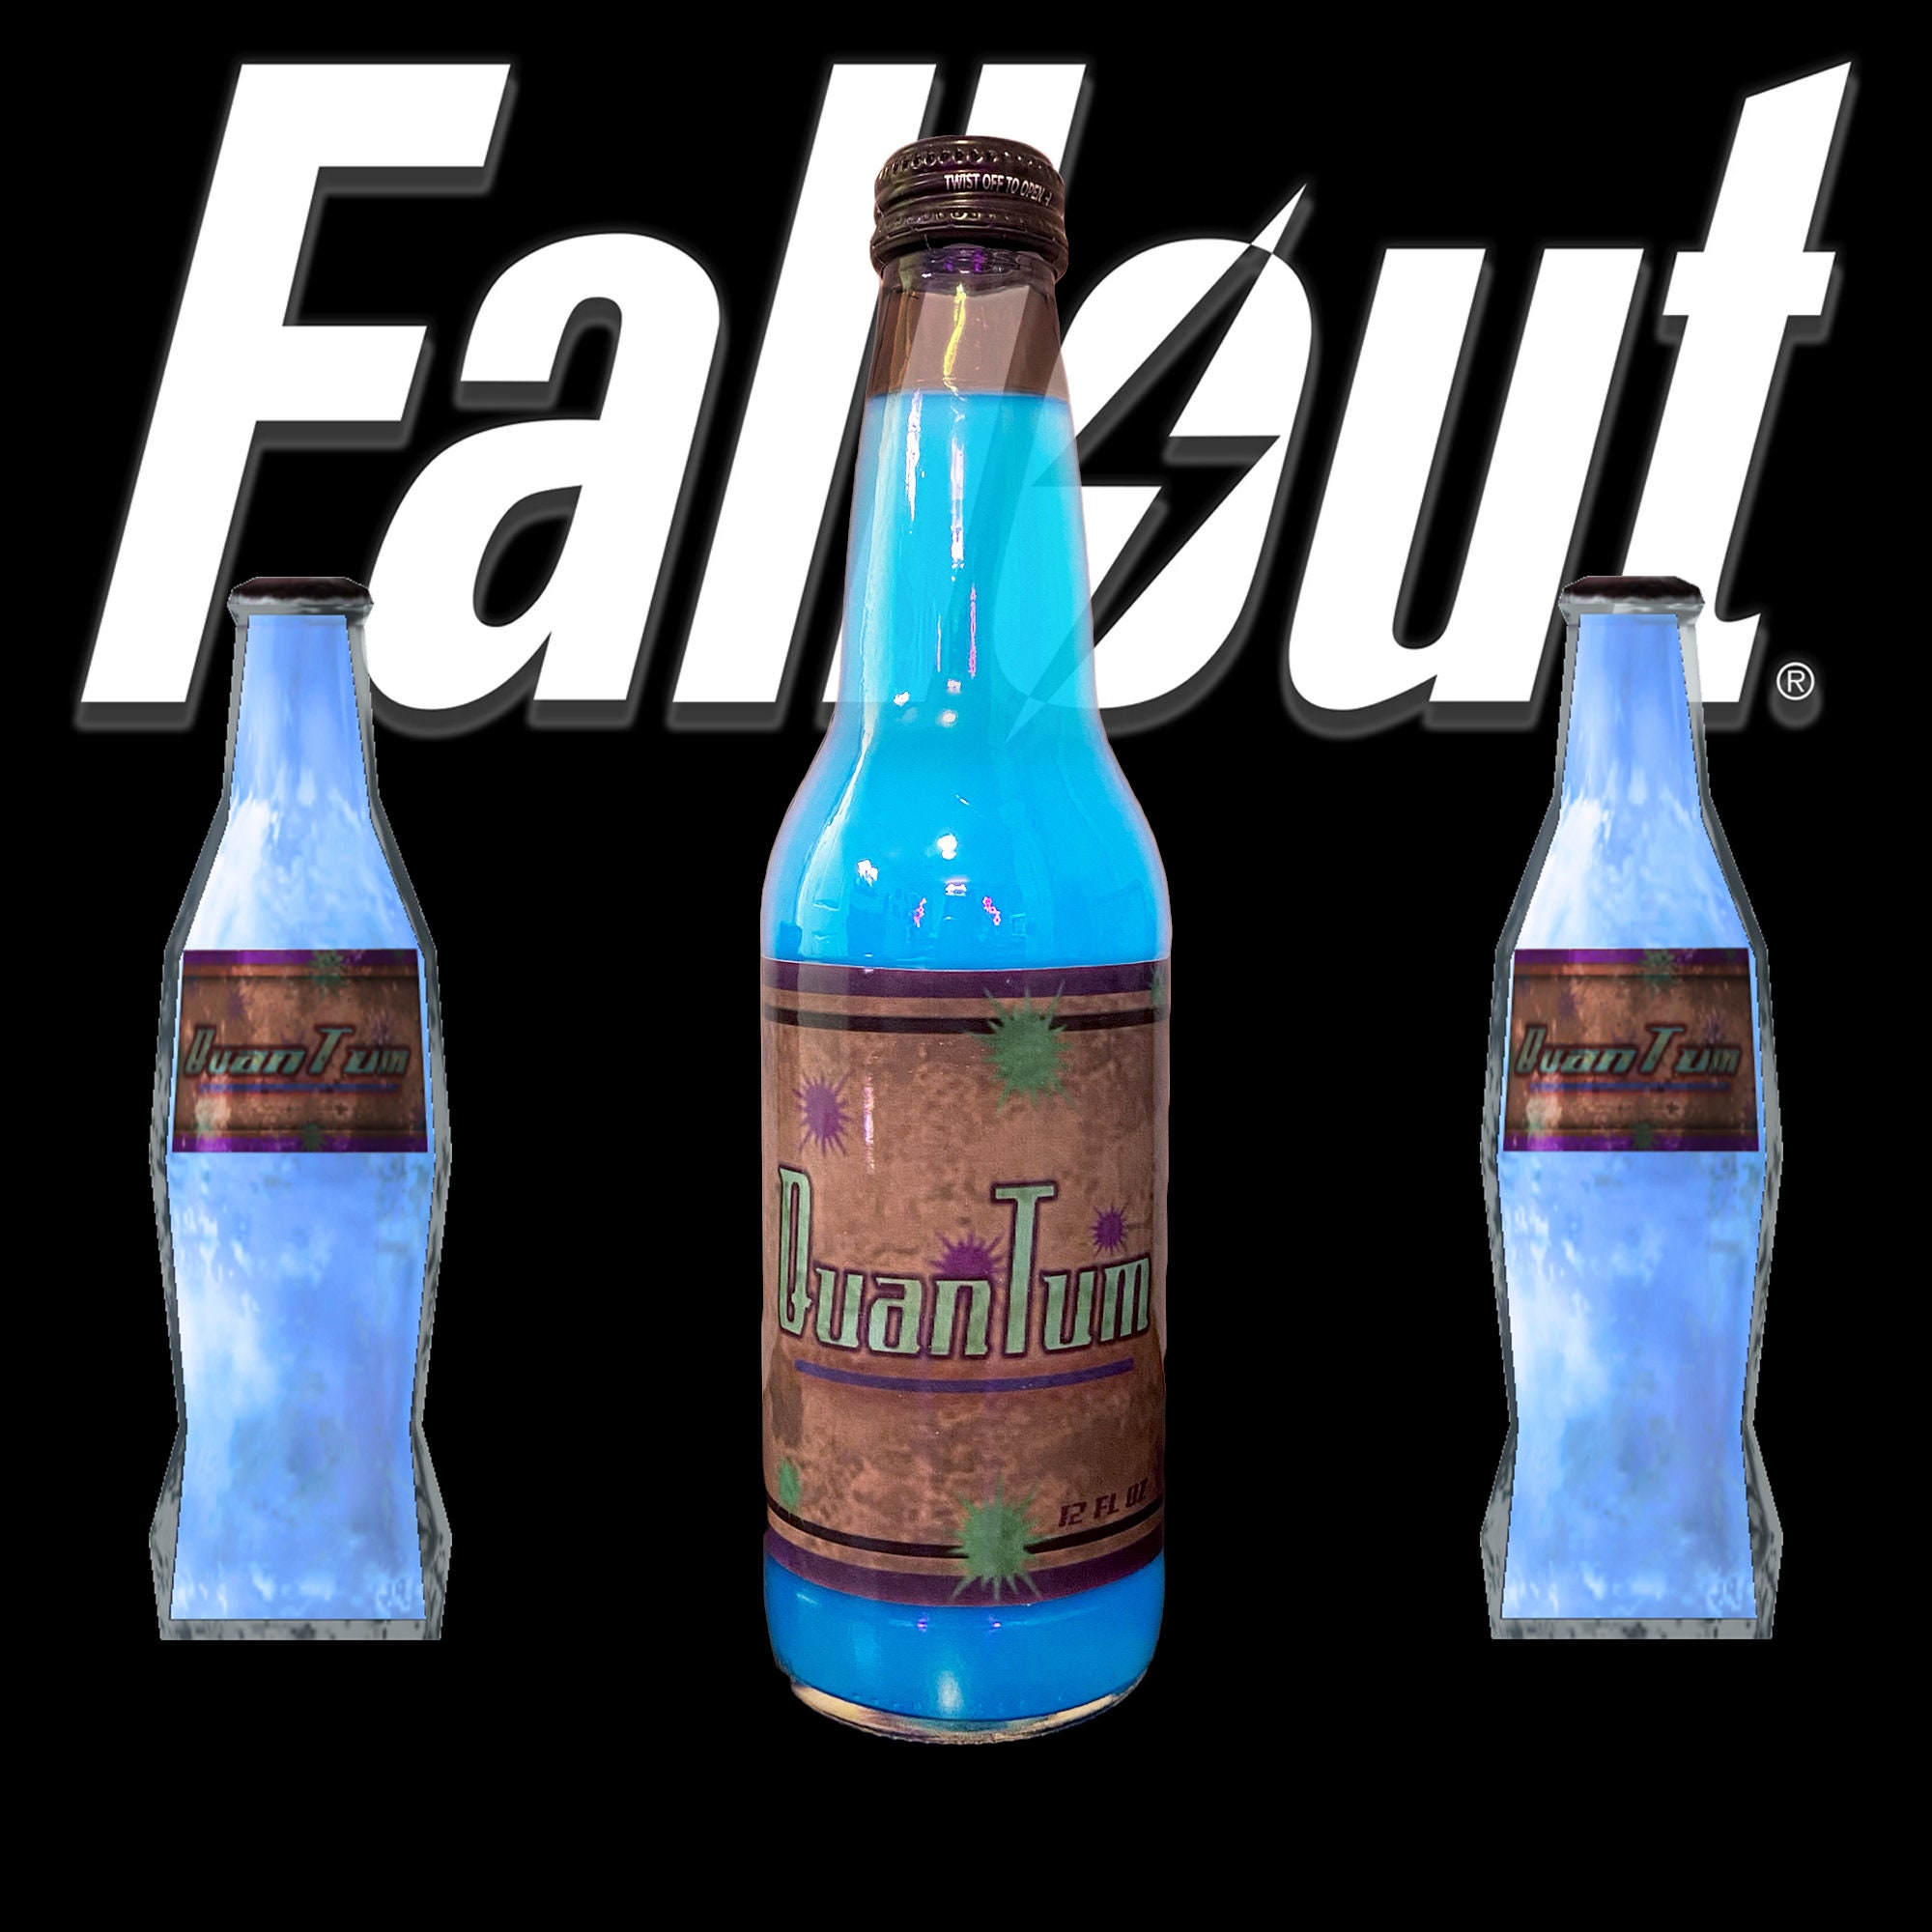 Fallout 4 nuka world завод по розливу напитков фото 53